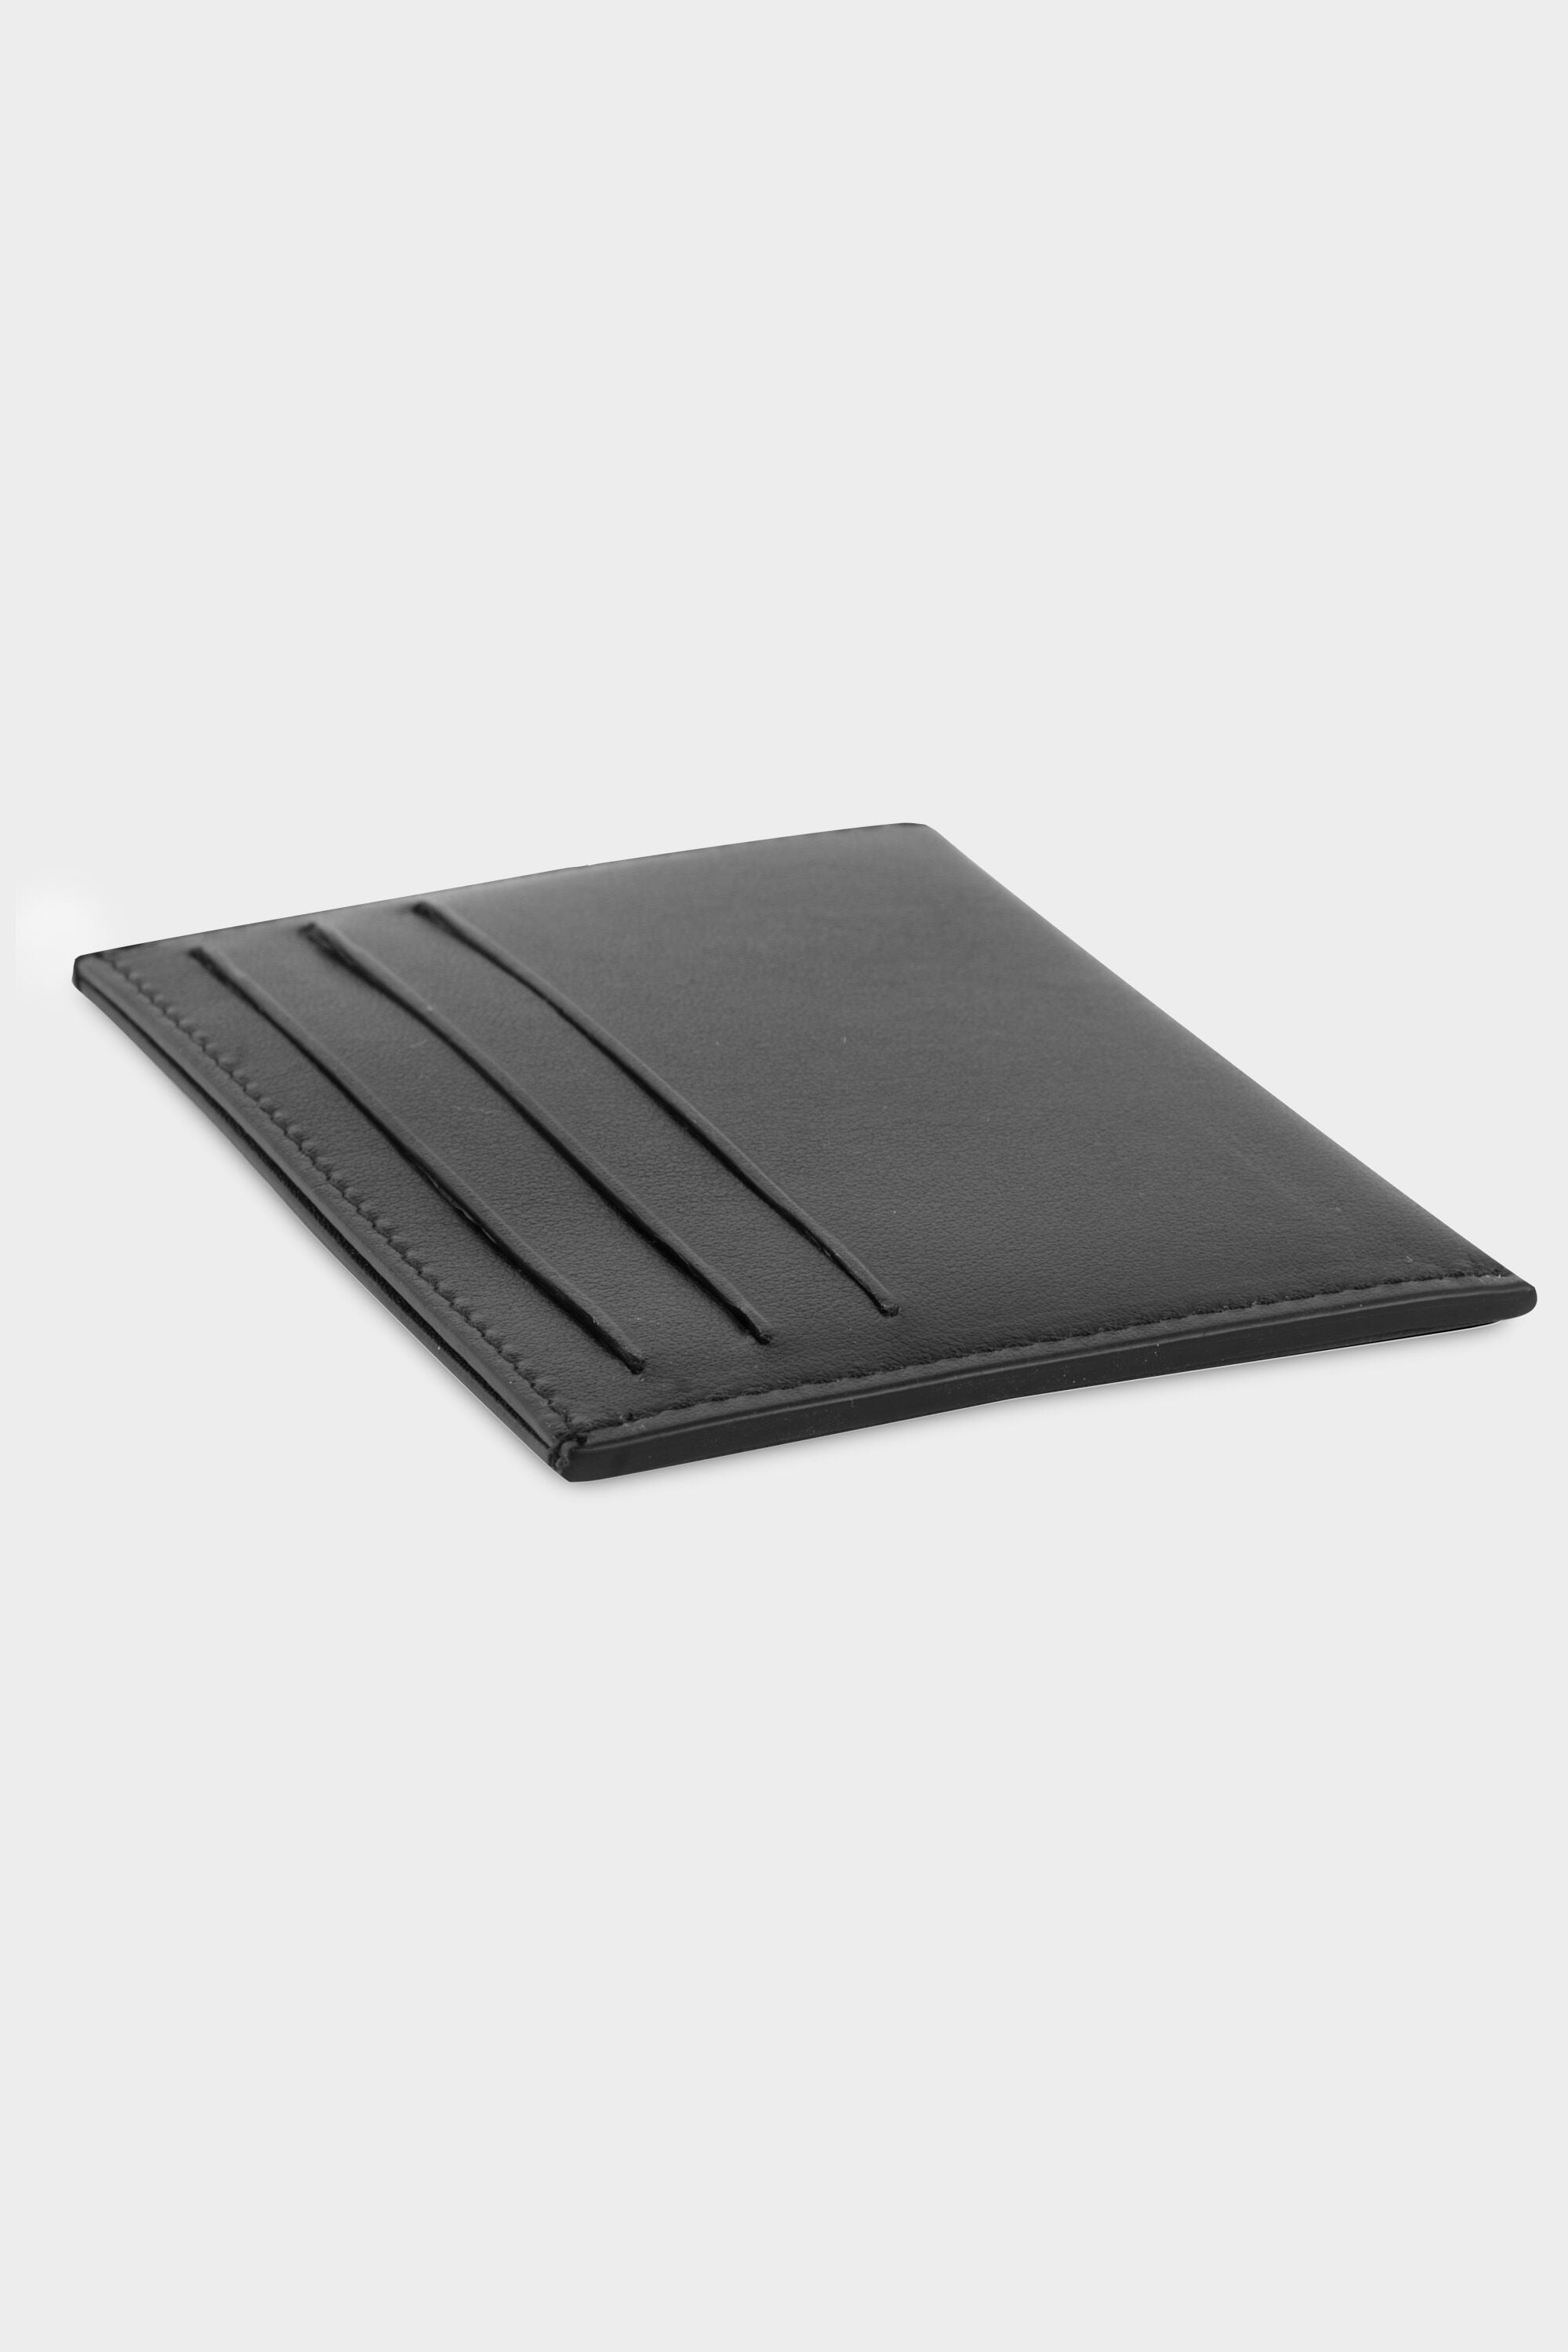 BT Leather Slim Card Holder Black